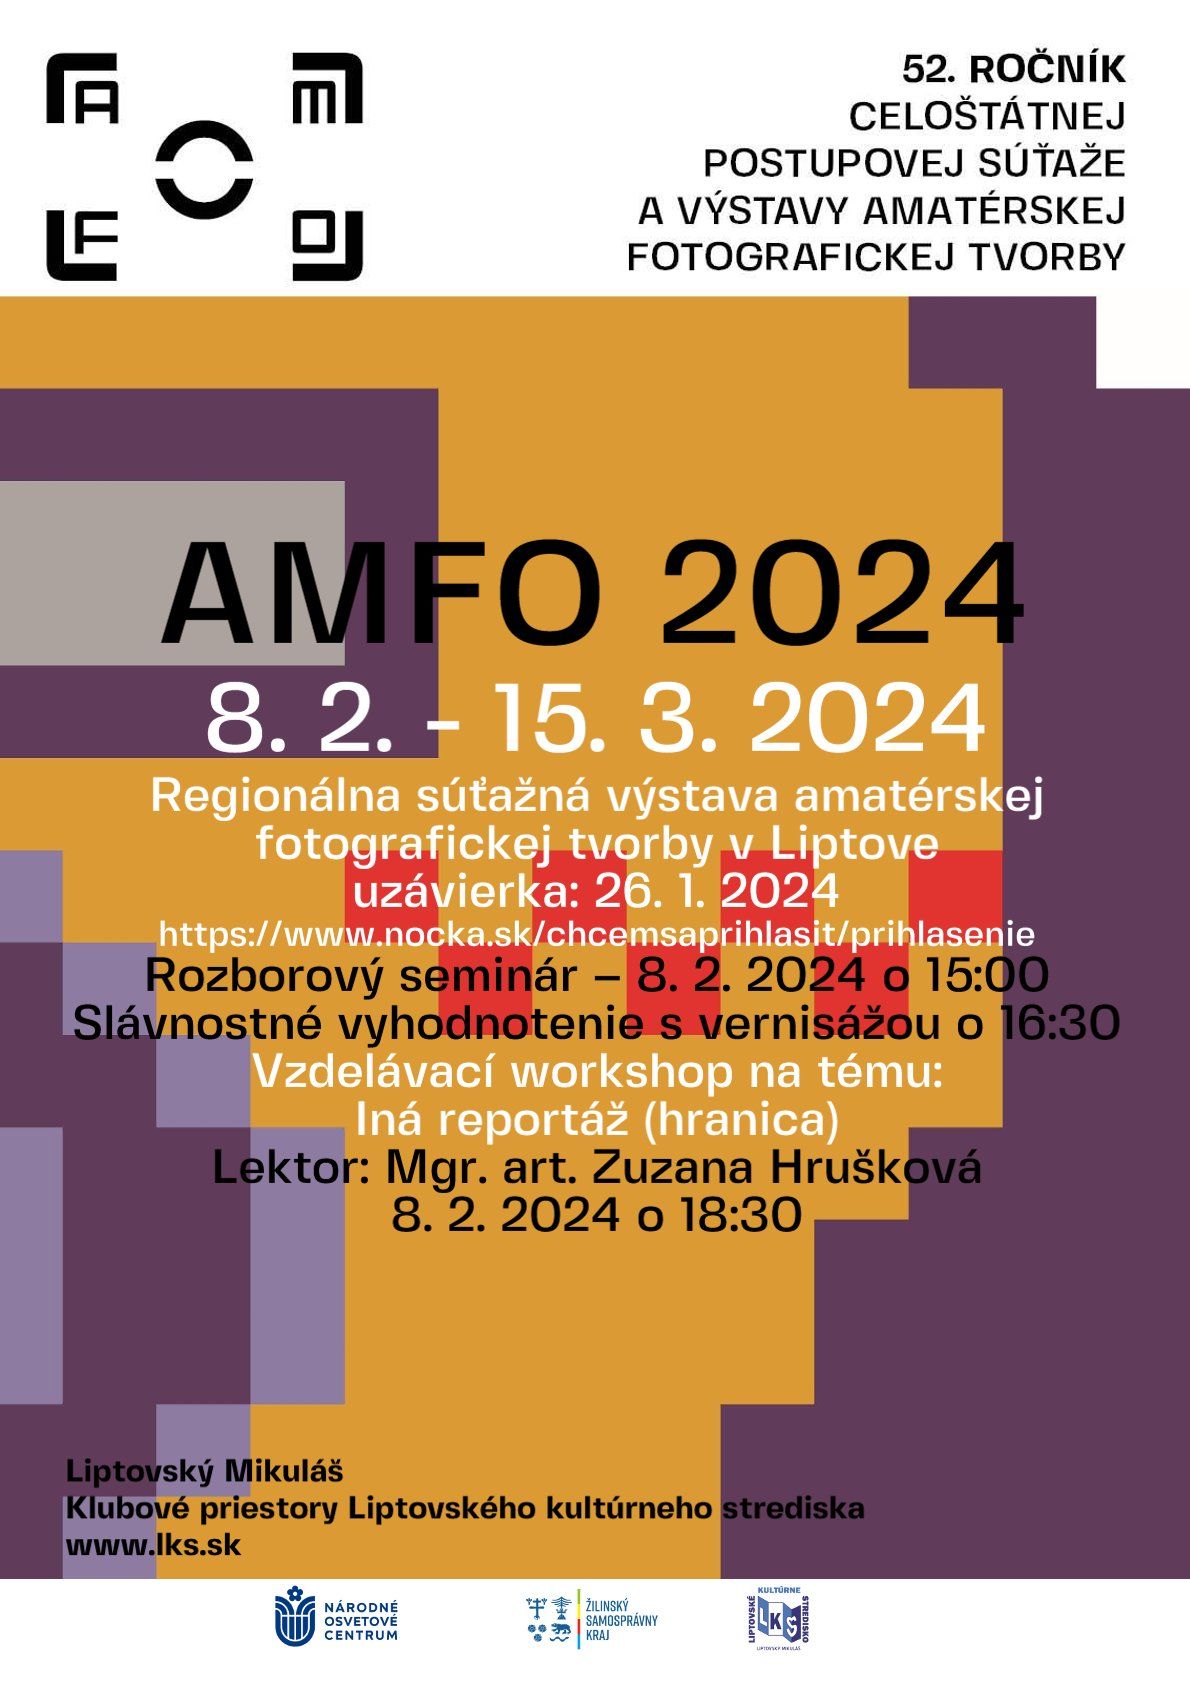 AMFO 2024 plagát.jpg